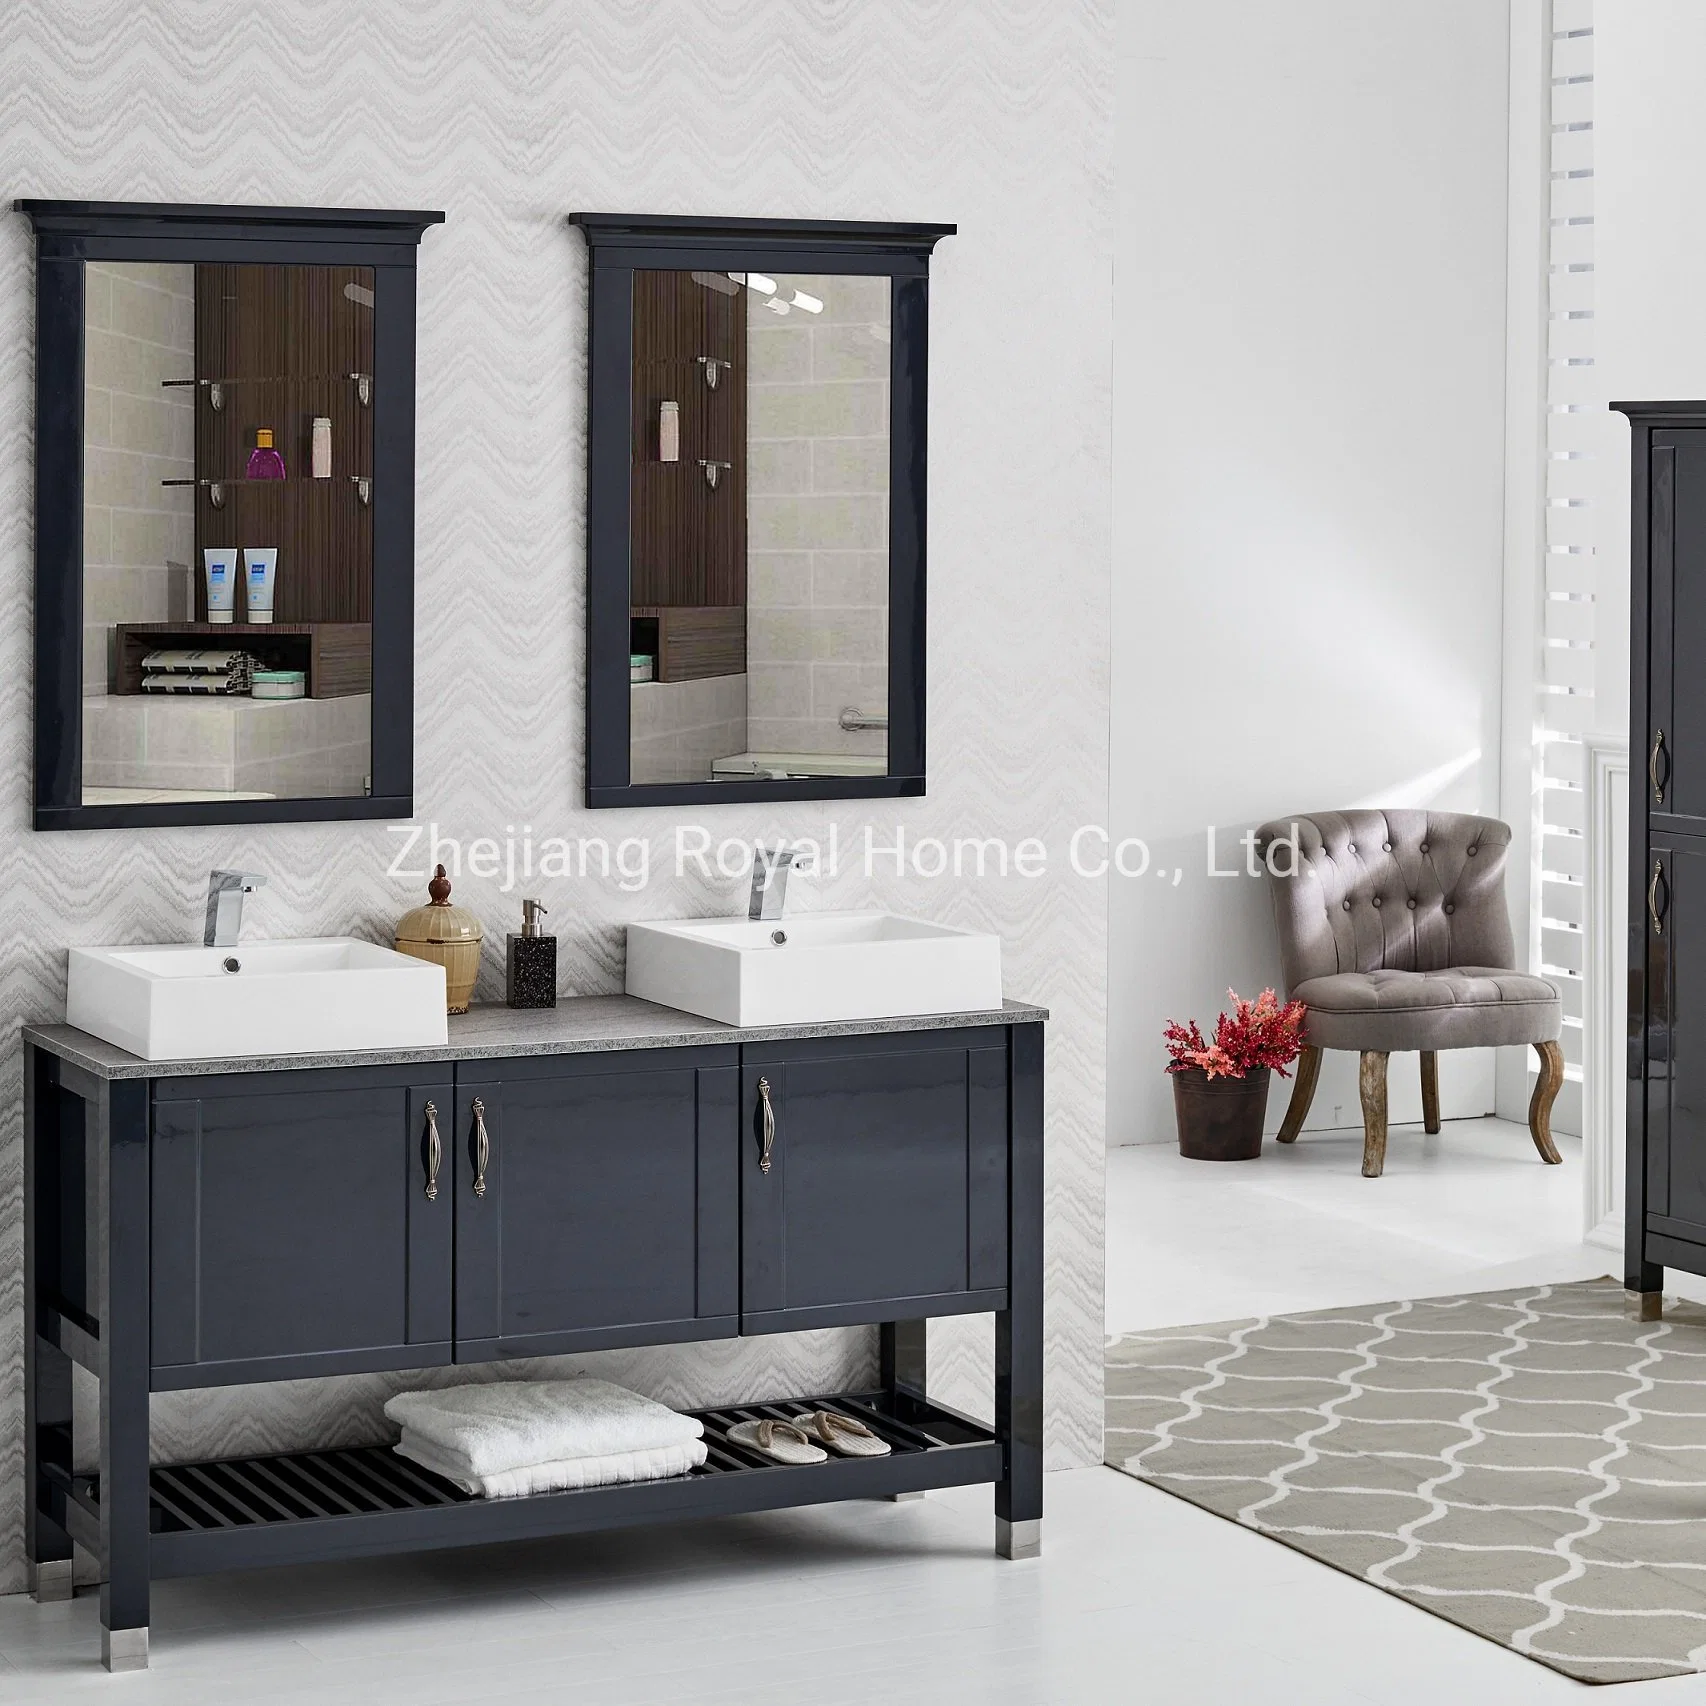 Precio mayorista lacado de madera moderno cuarto de baño espejo de tocador de diseñador de cuarto de baño Cuenca